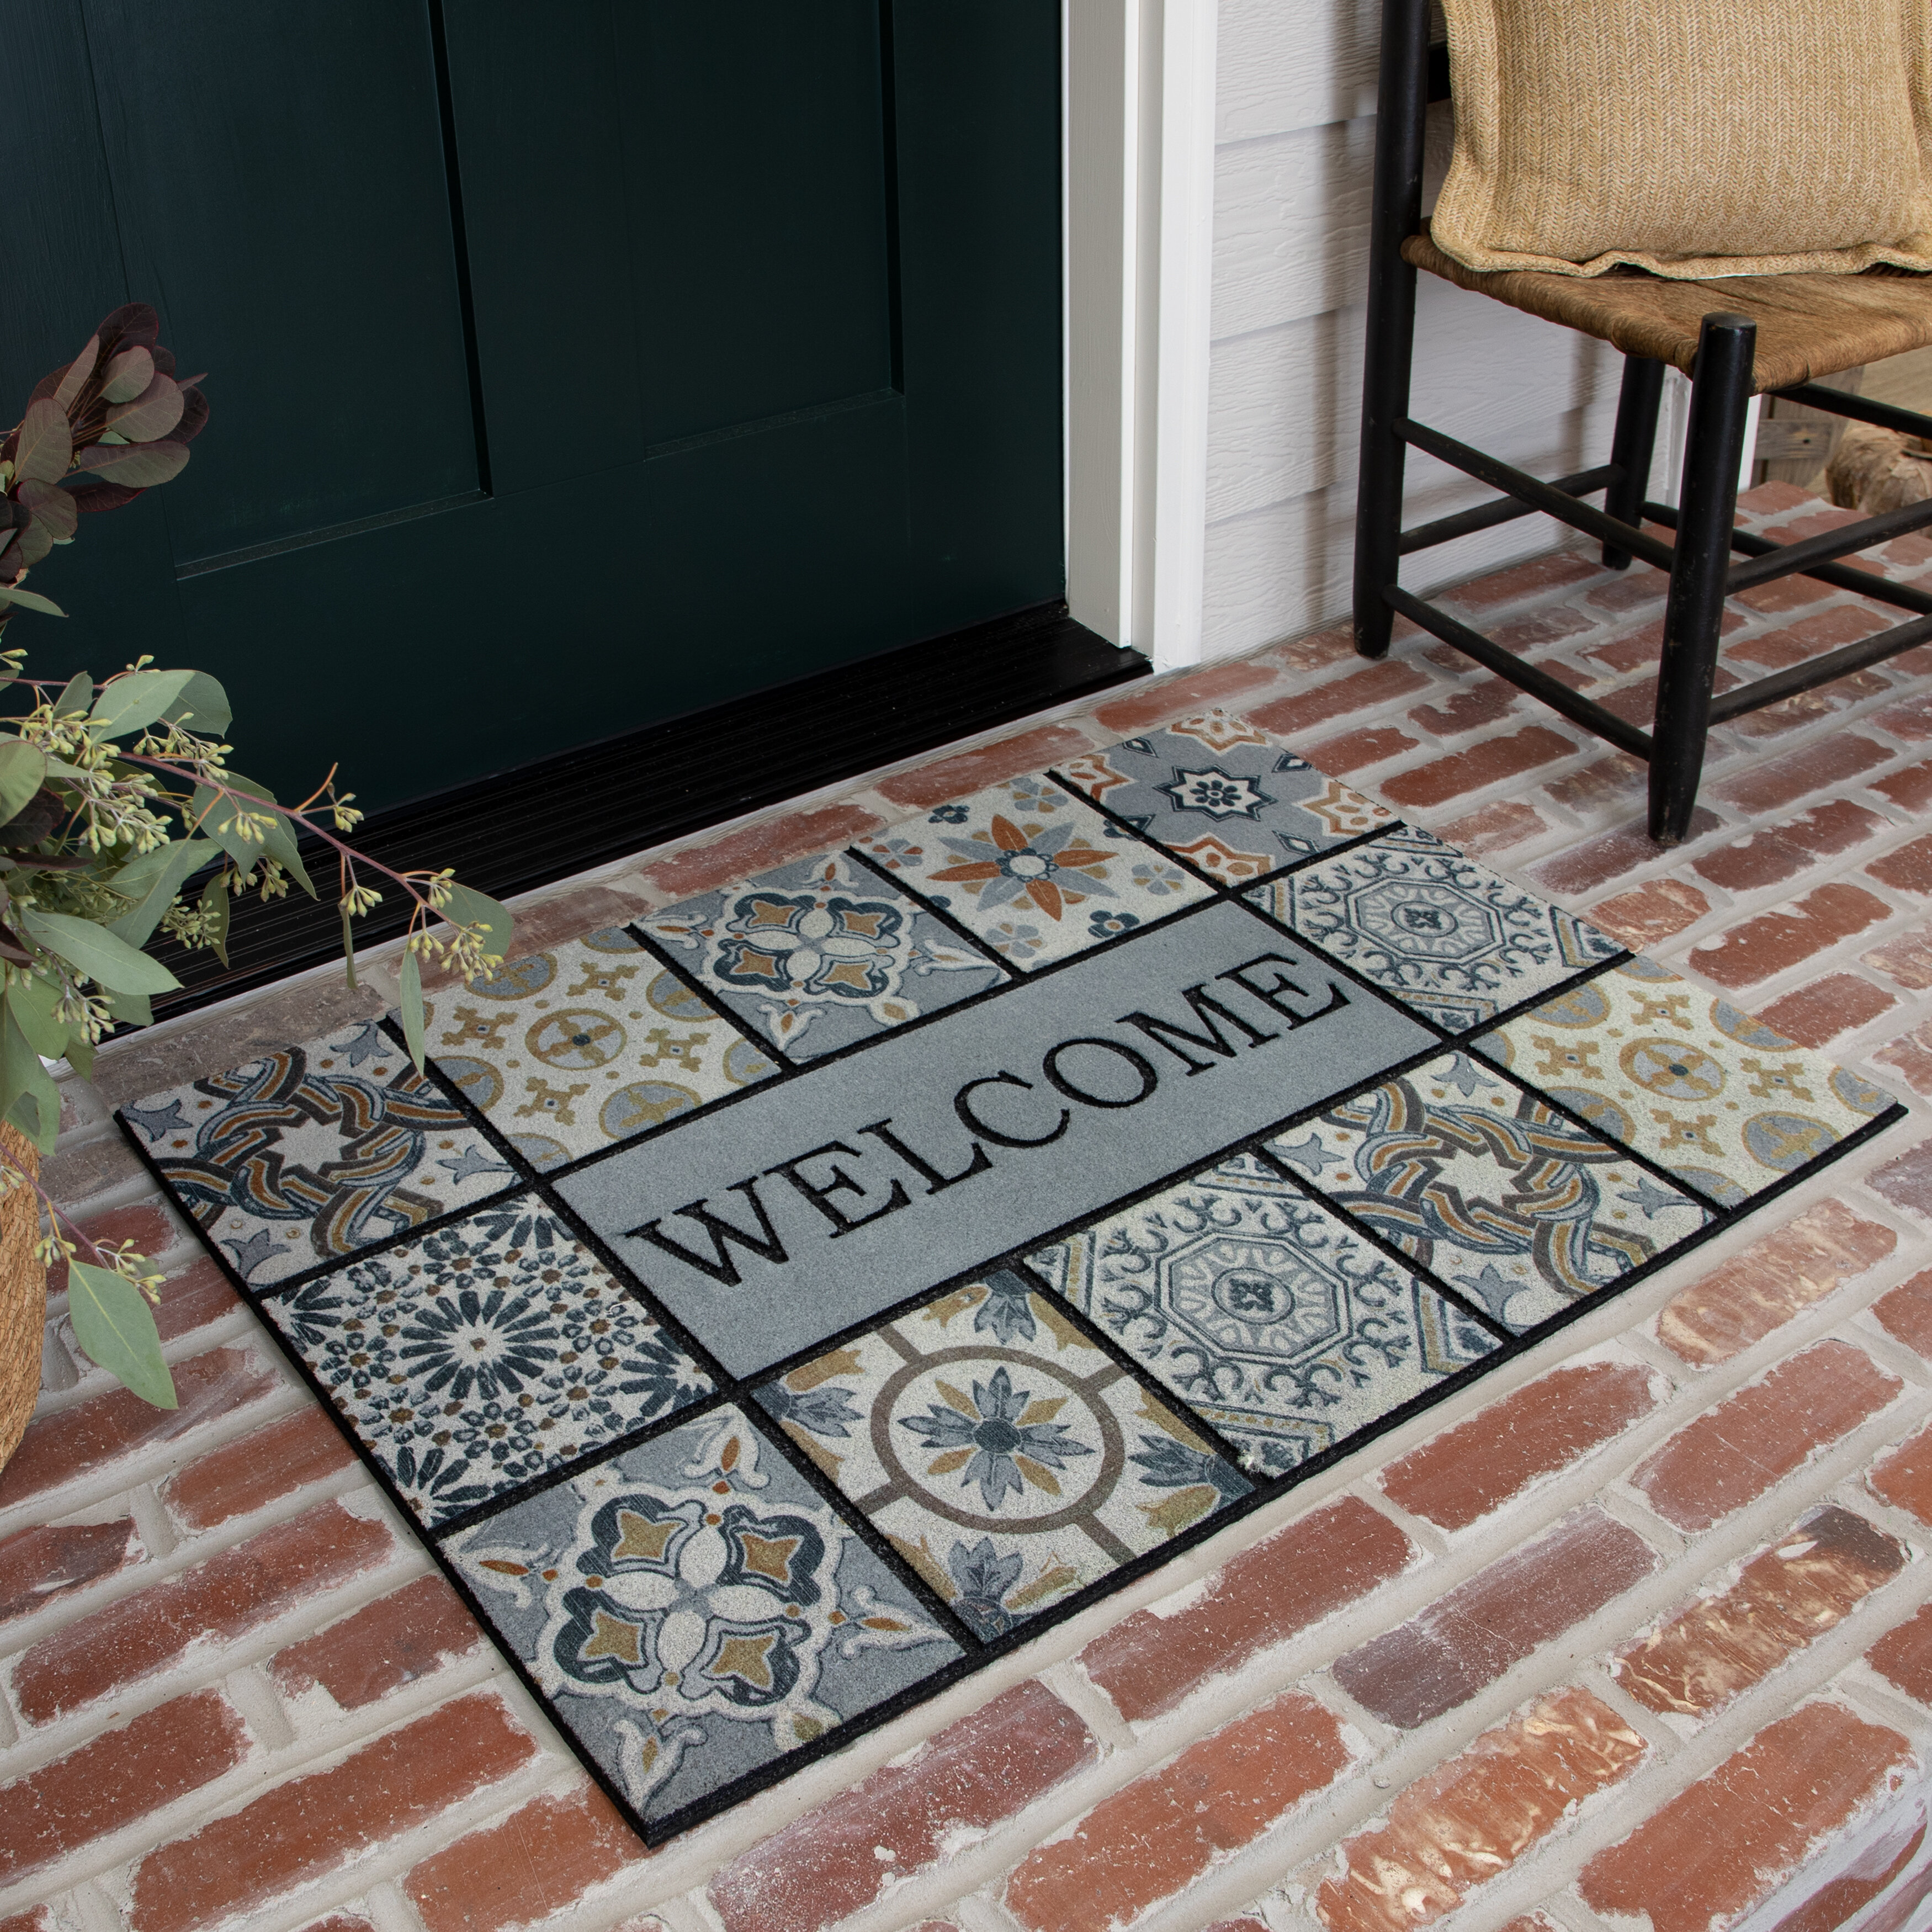 Mohawk Home Entryway Door Mat 2' x 3' All Weather Doormat Outdoor Non Slip  Recycled Rubber, Deco Tile Slice Brown